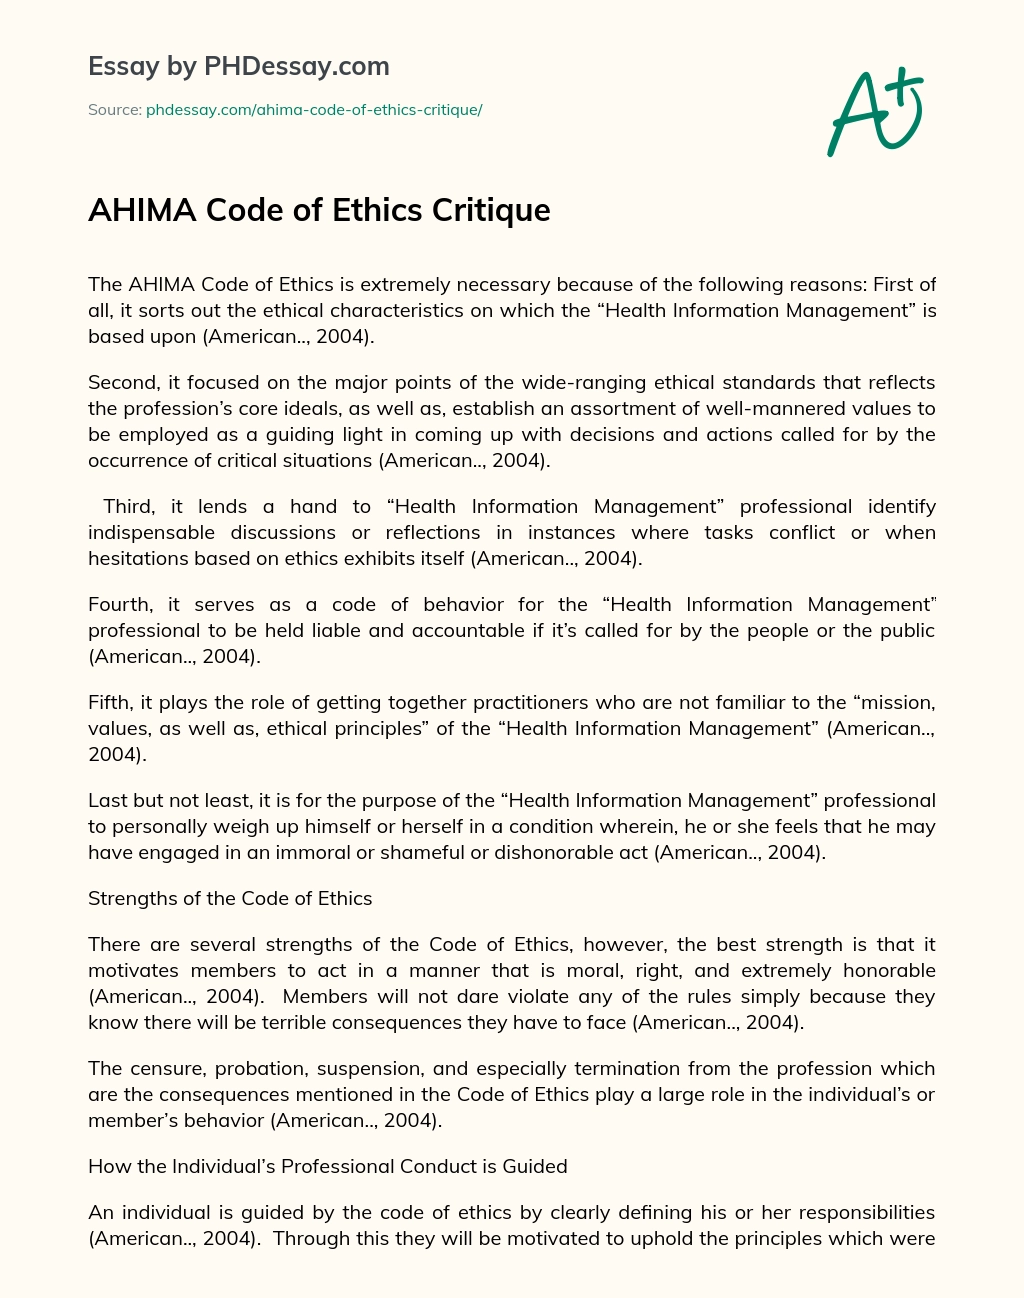 AHIMA Code of Ethics Critique essay